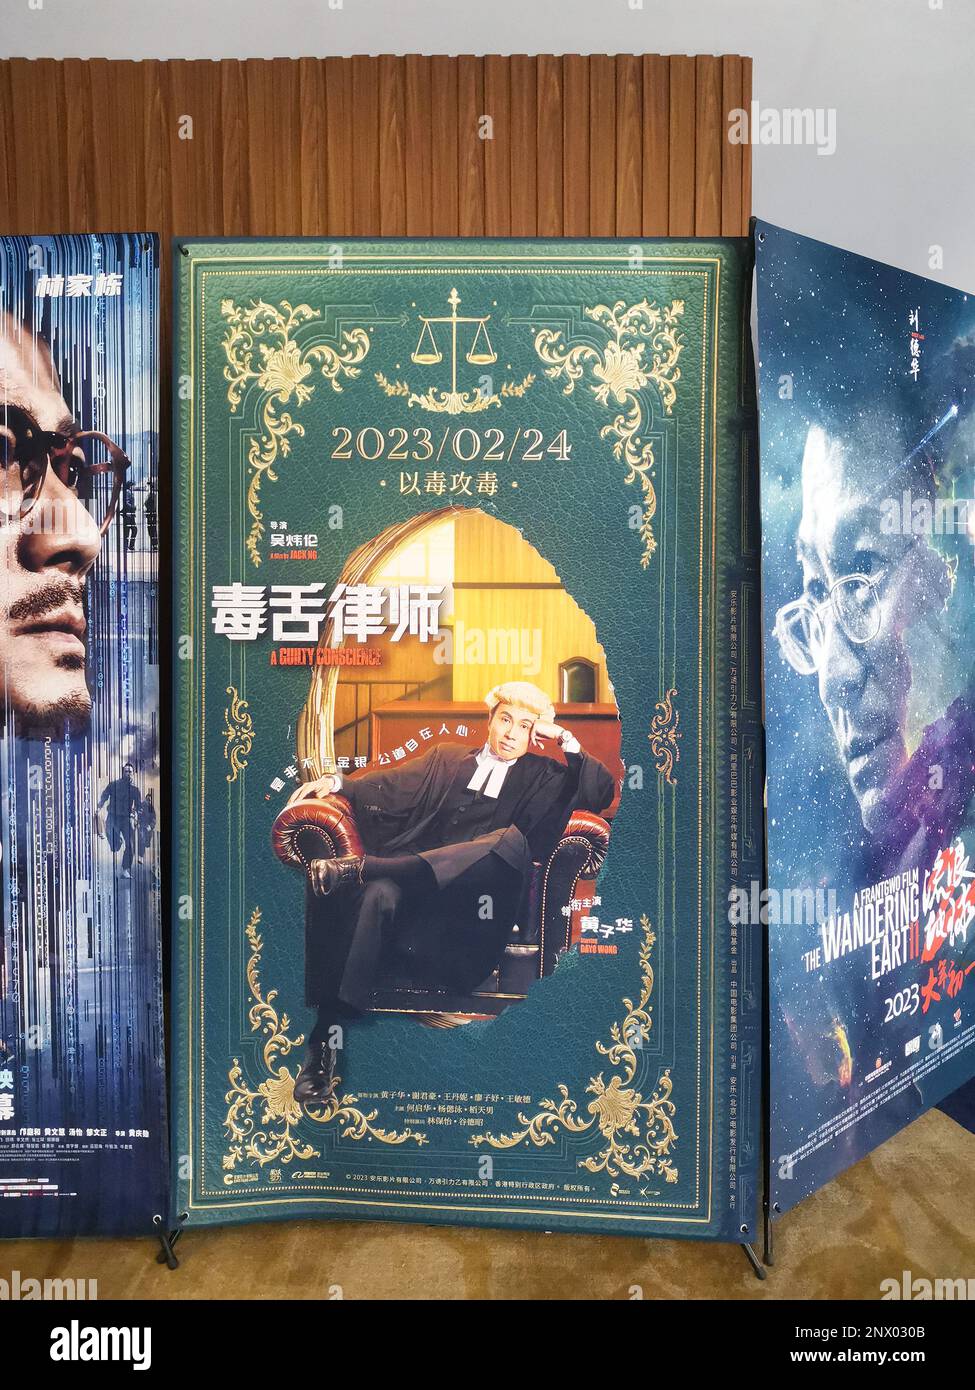 Zhongshan, China-Februar 24,2023: Poster des Films namens ein schlechtes Gewissen, die Hauptrolle ist Dayo Wong Tze Wah und es gewinnt den Spitzenplatz im Stockfoto